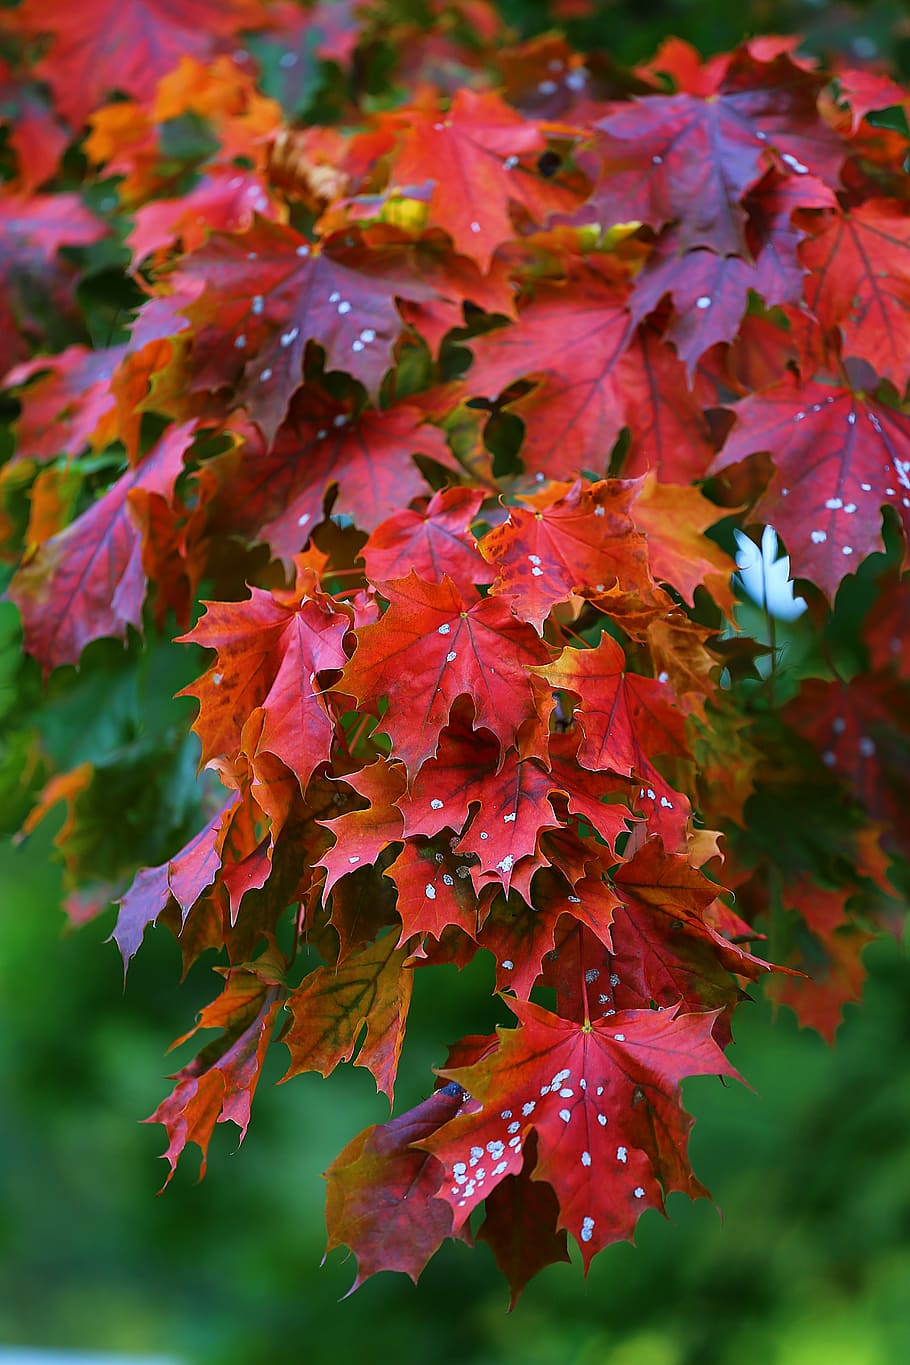 fotografia, vermelho, folha, árvores de folha de bordo, bordo, árvore, folhas, natureza, outono, outono dourado